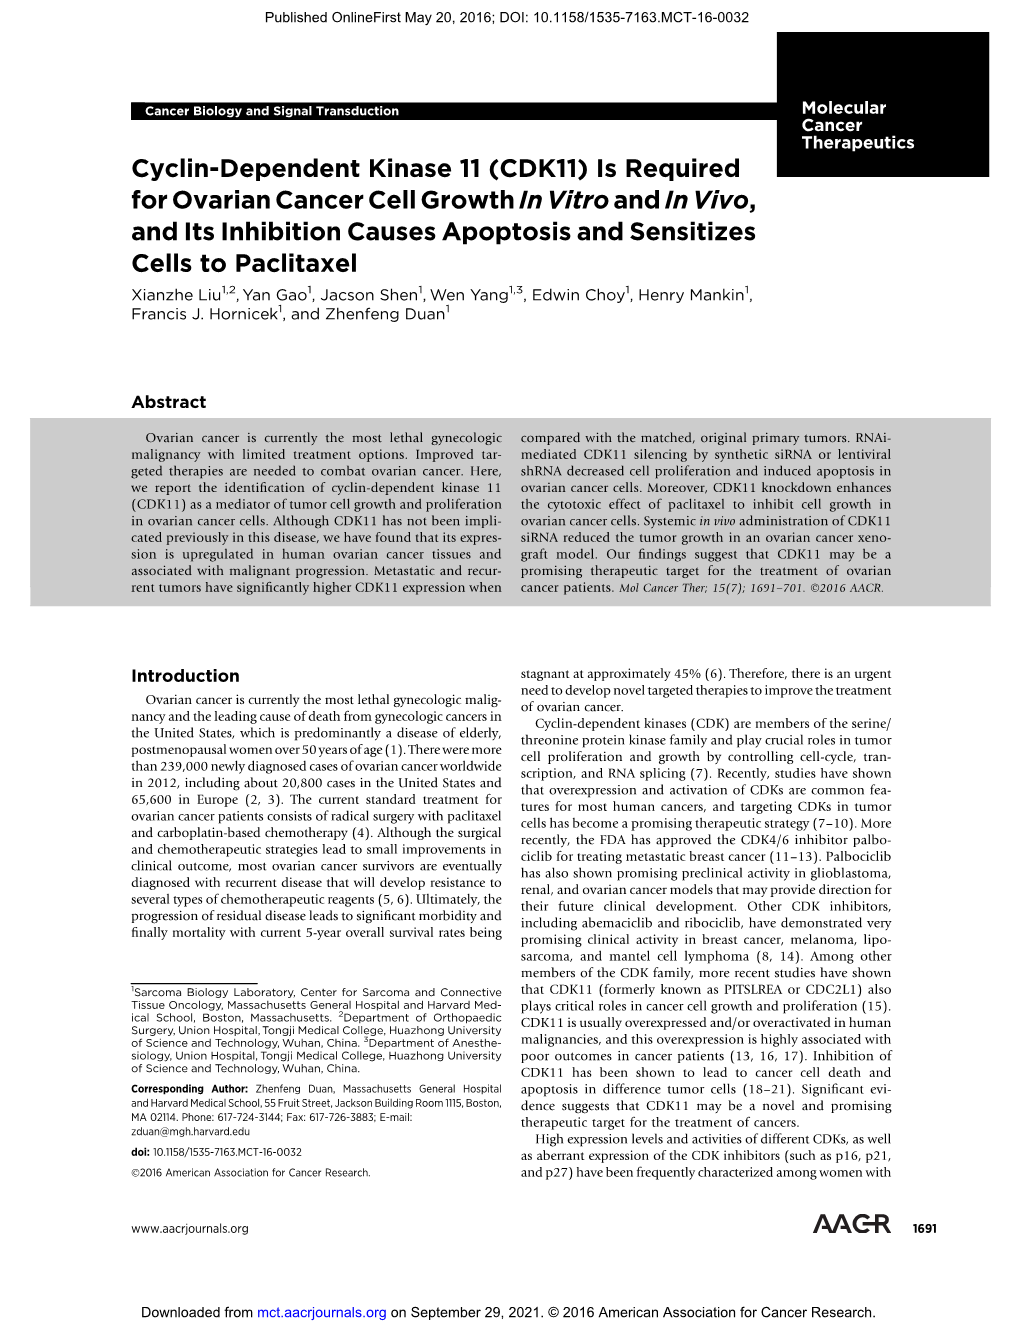 Cyclin-Dependent Kinase 11 (CDK11)